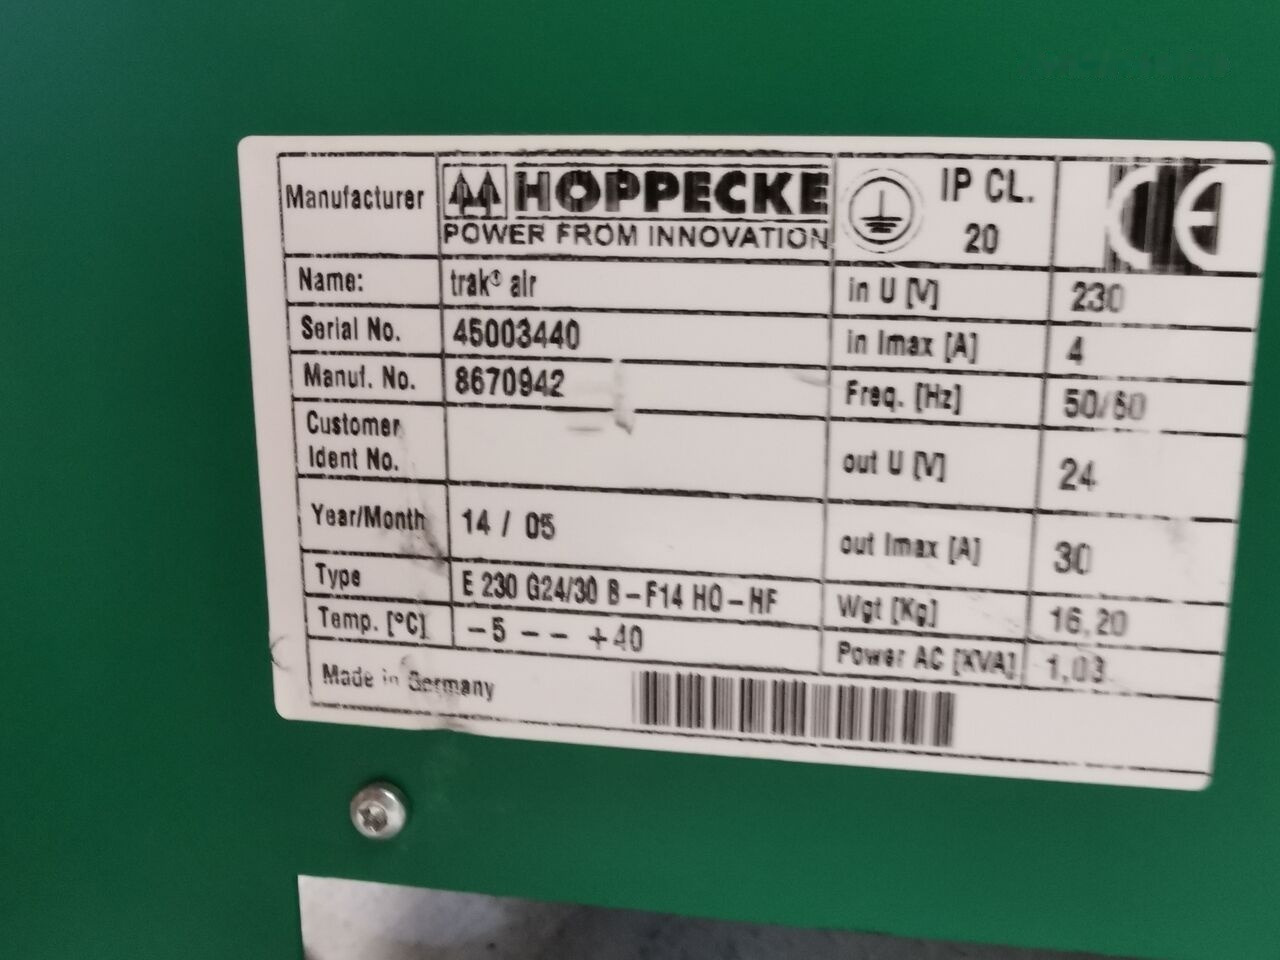 מצבר עבור מלגזה Hoppecke E230 G24/30  for Hoppecke E 230 G24/30 B- F14 electric forklift: תמונה 3